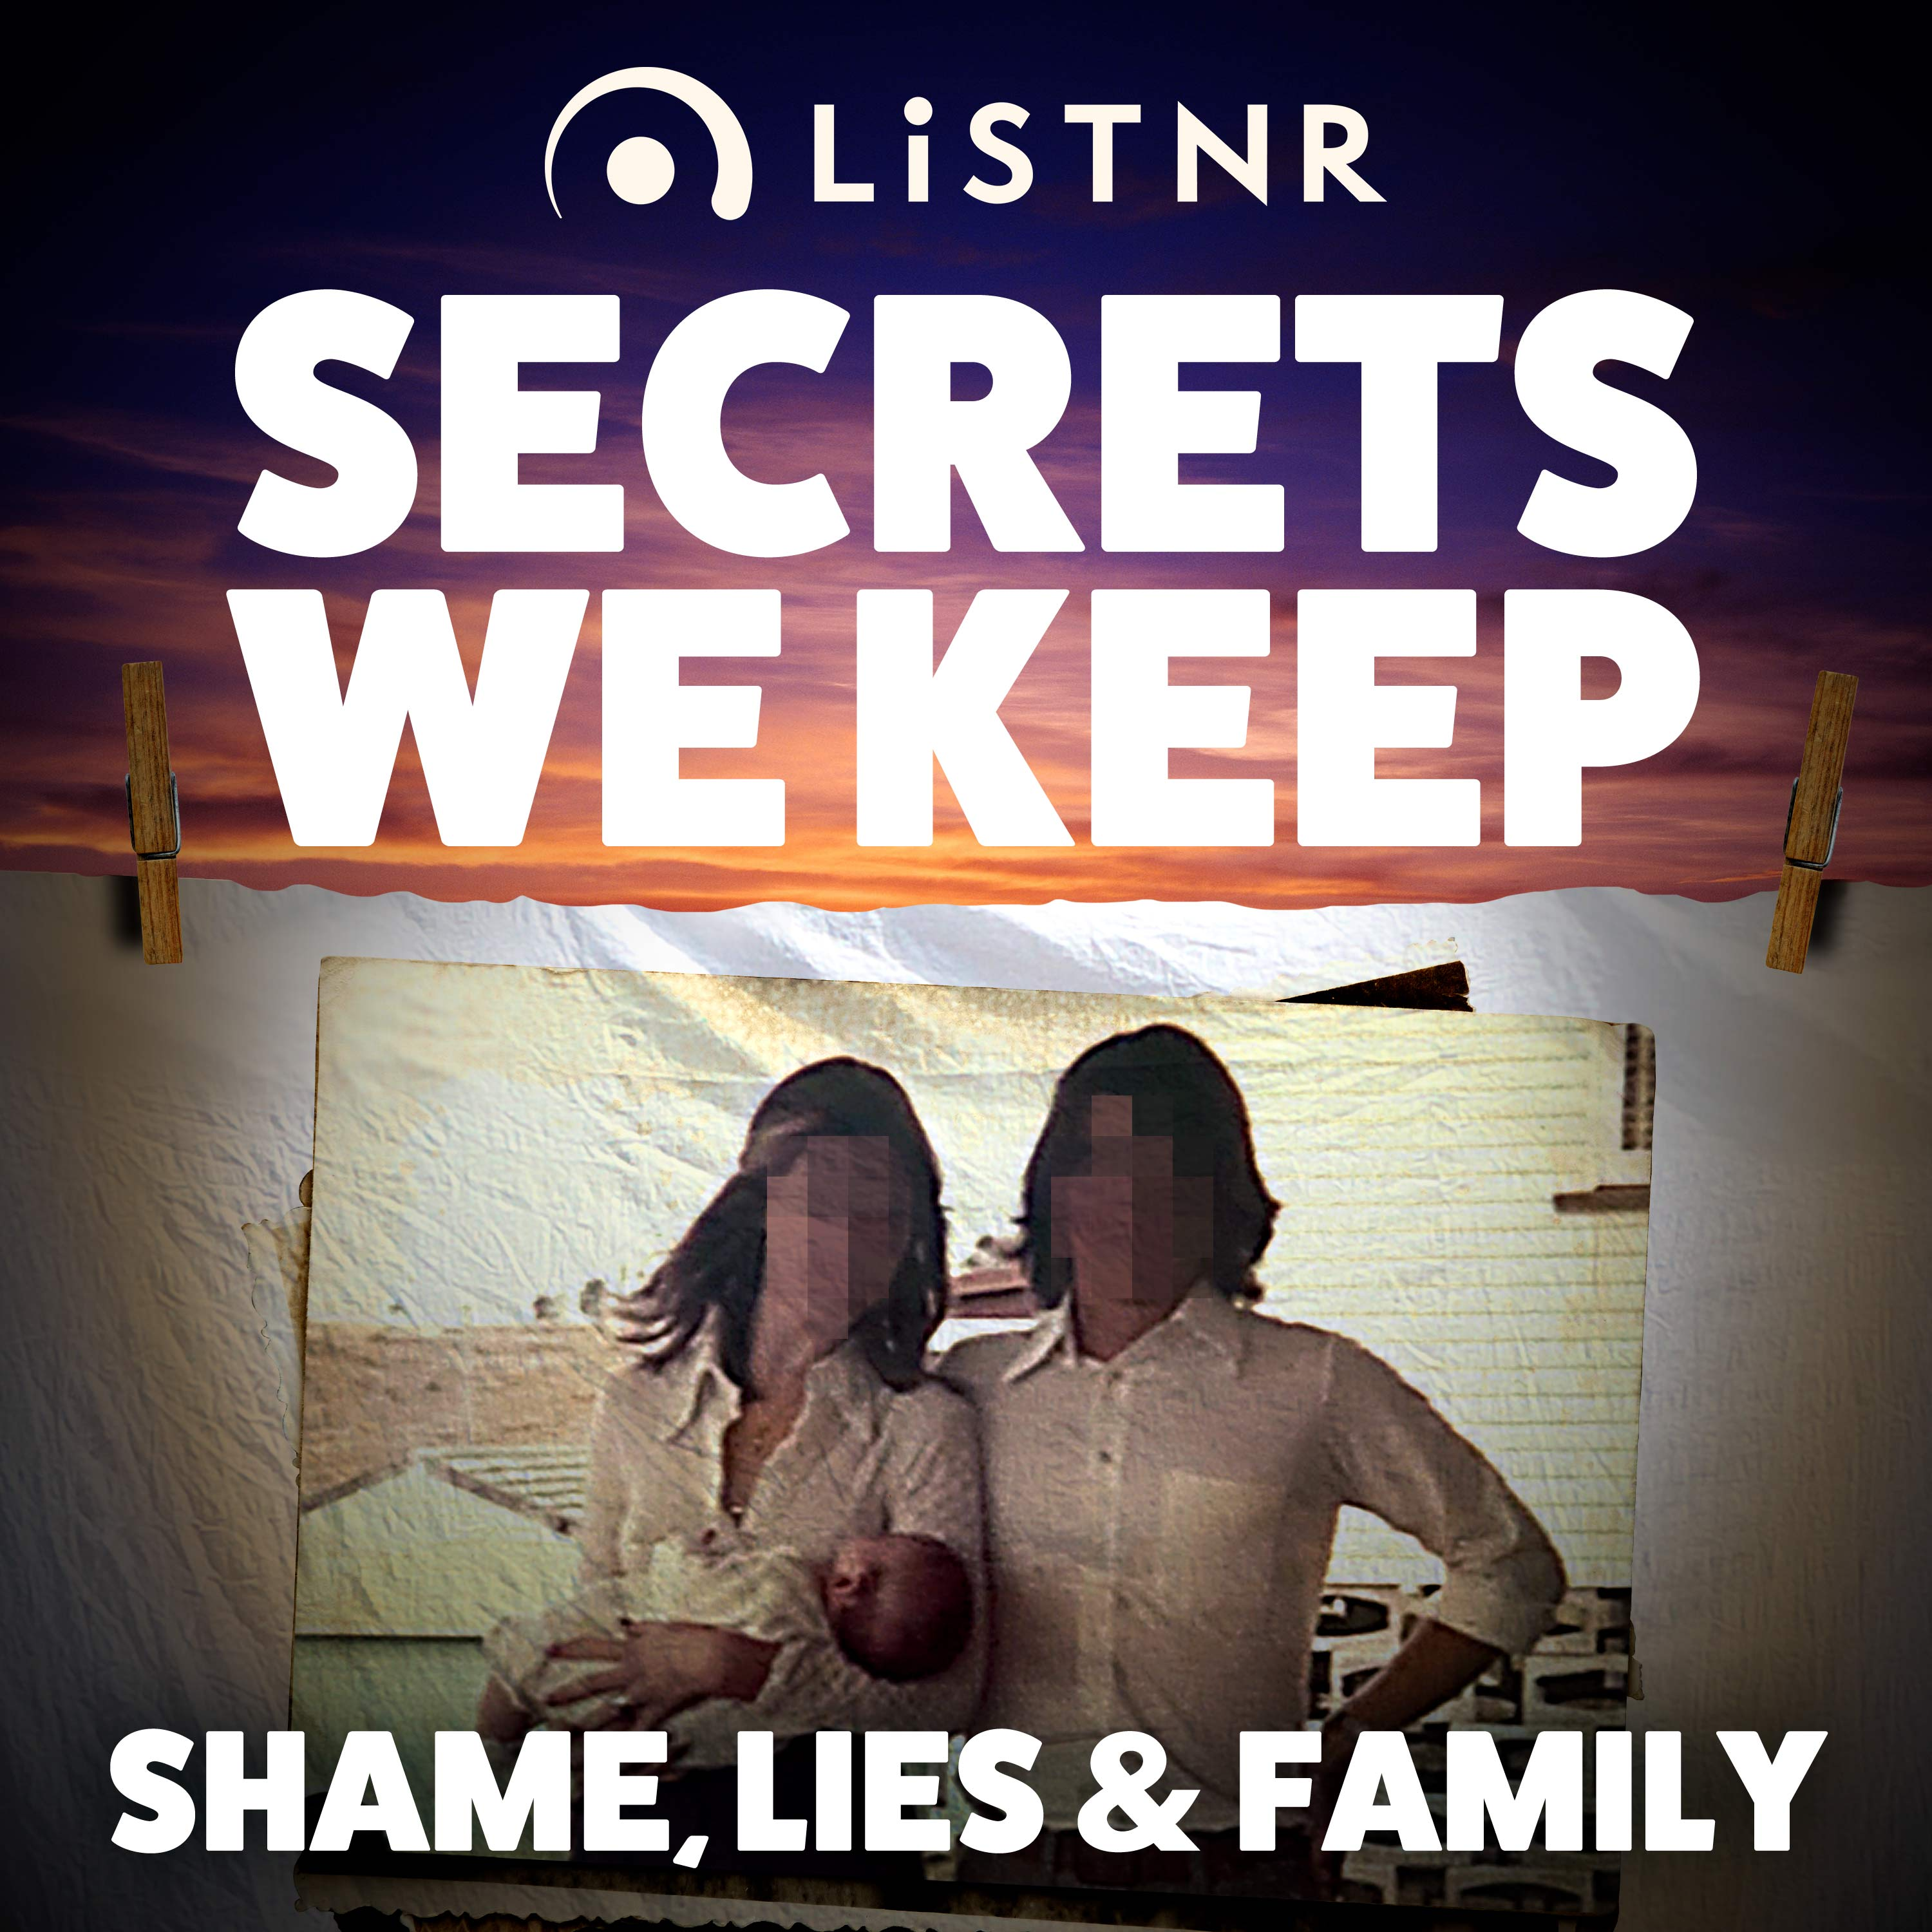 Shame, Lies & Family - Moral danger